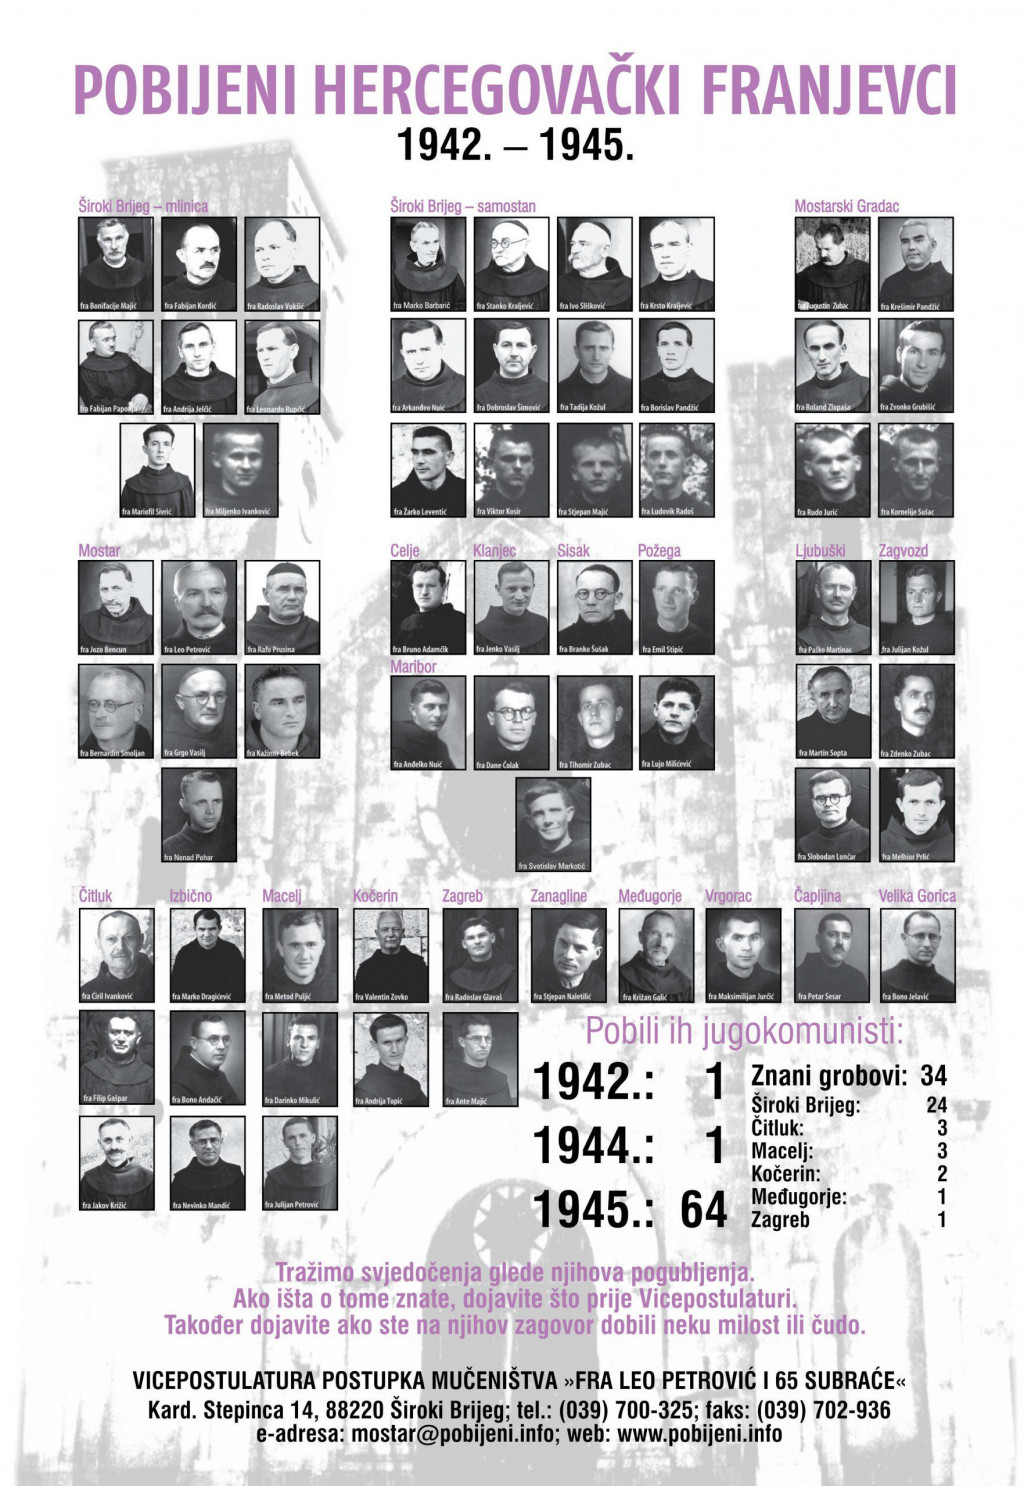 Pobijeni hercegovački franjevci 1942. - 1945.